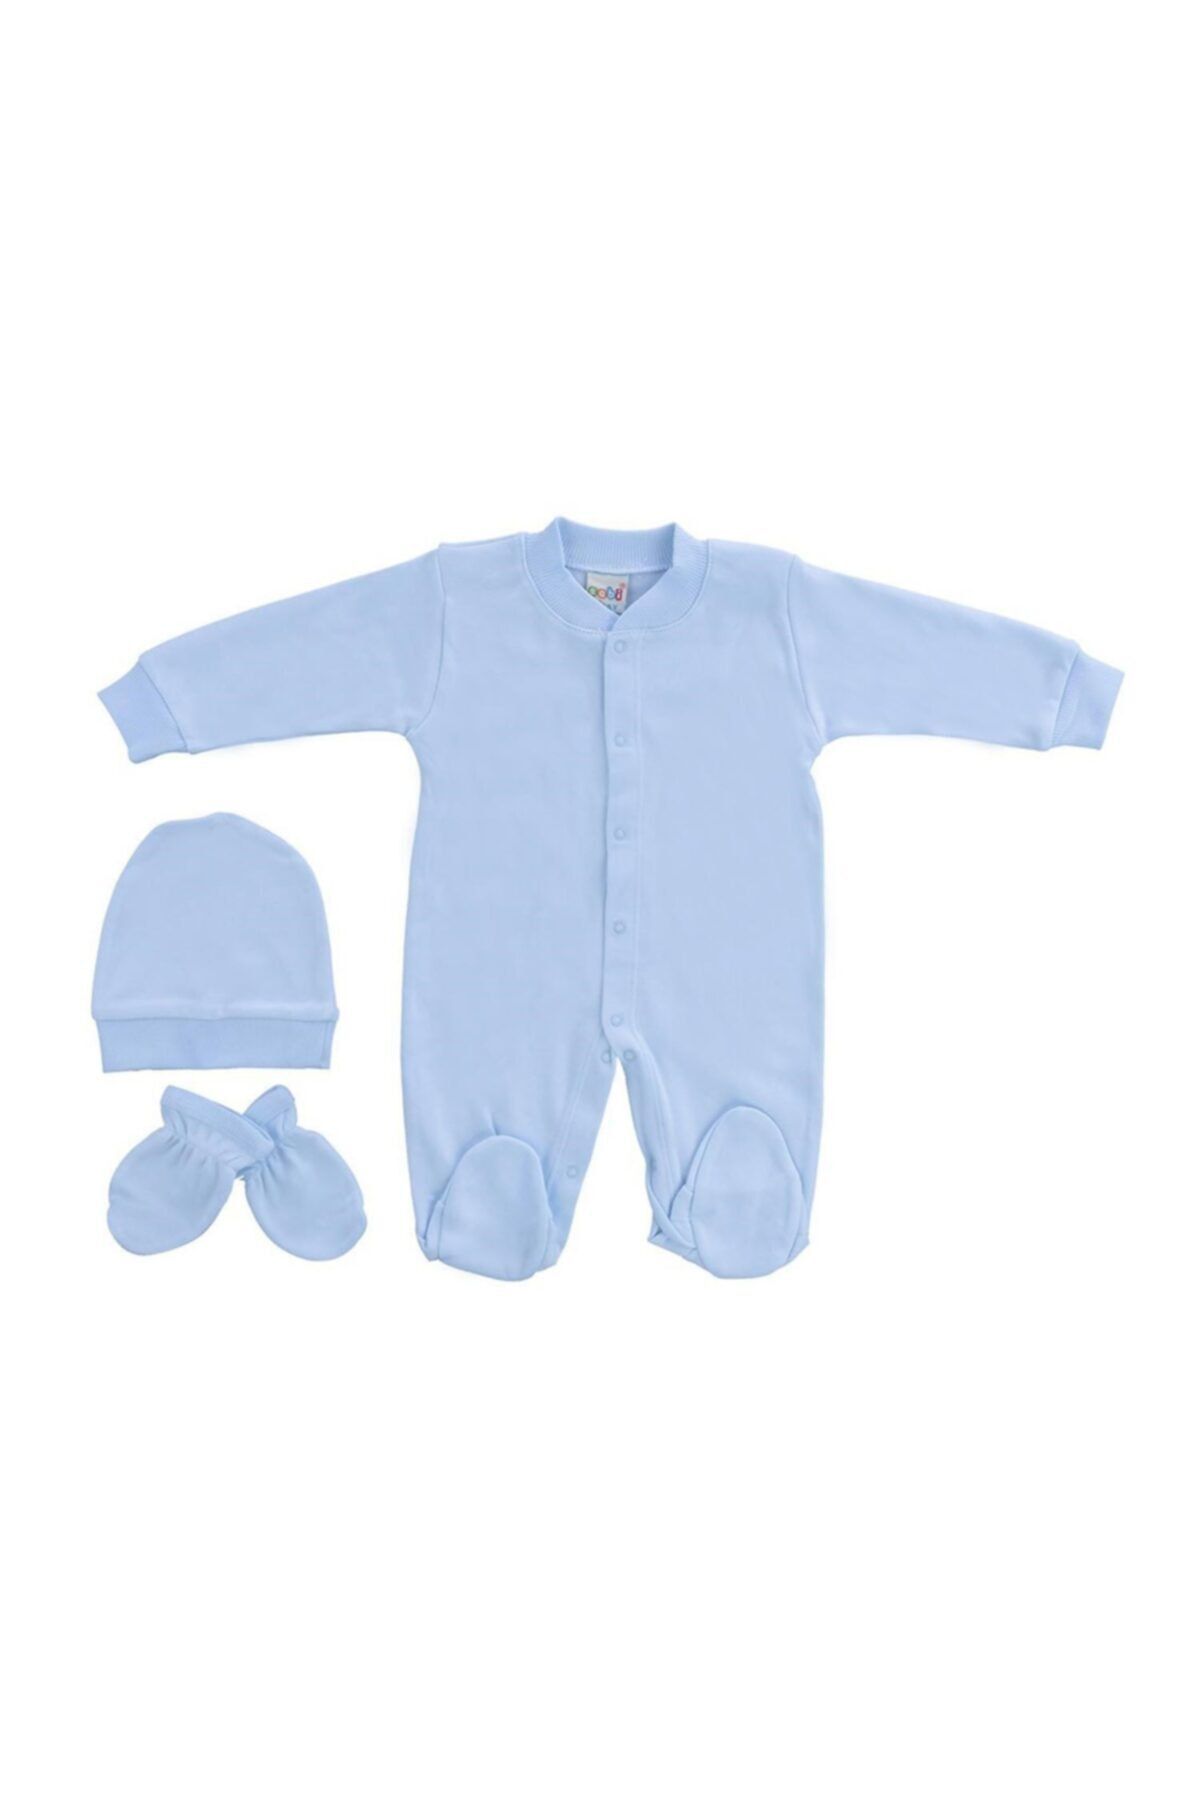 Sebi Bebe Erkek Bebek Mavi 3'lü Tulum 4001